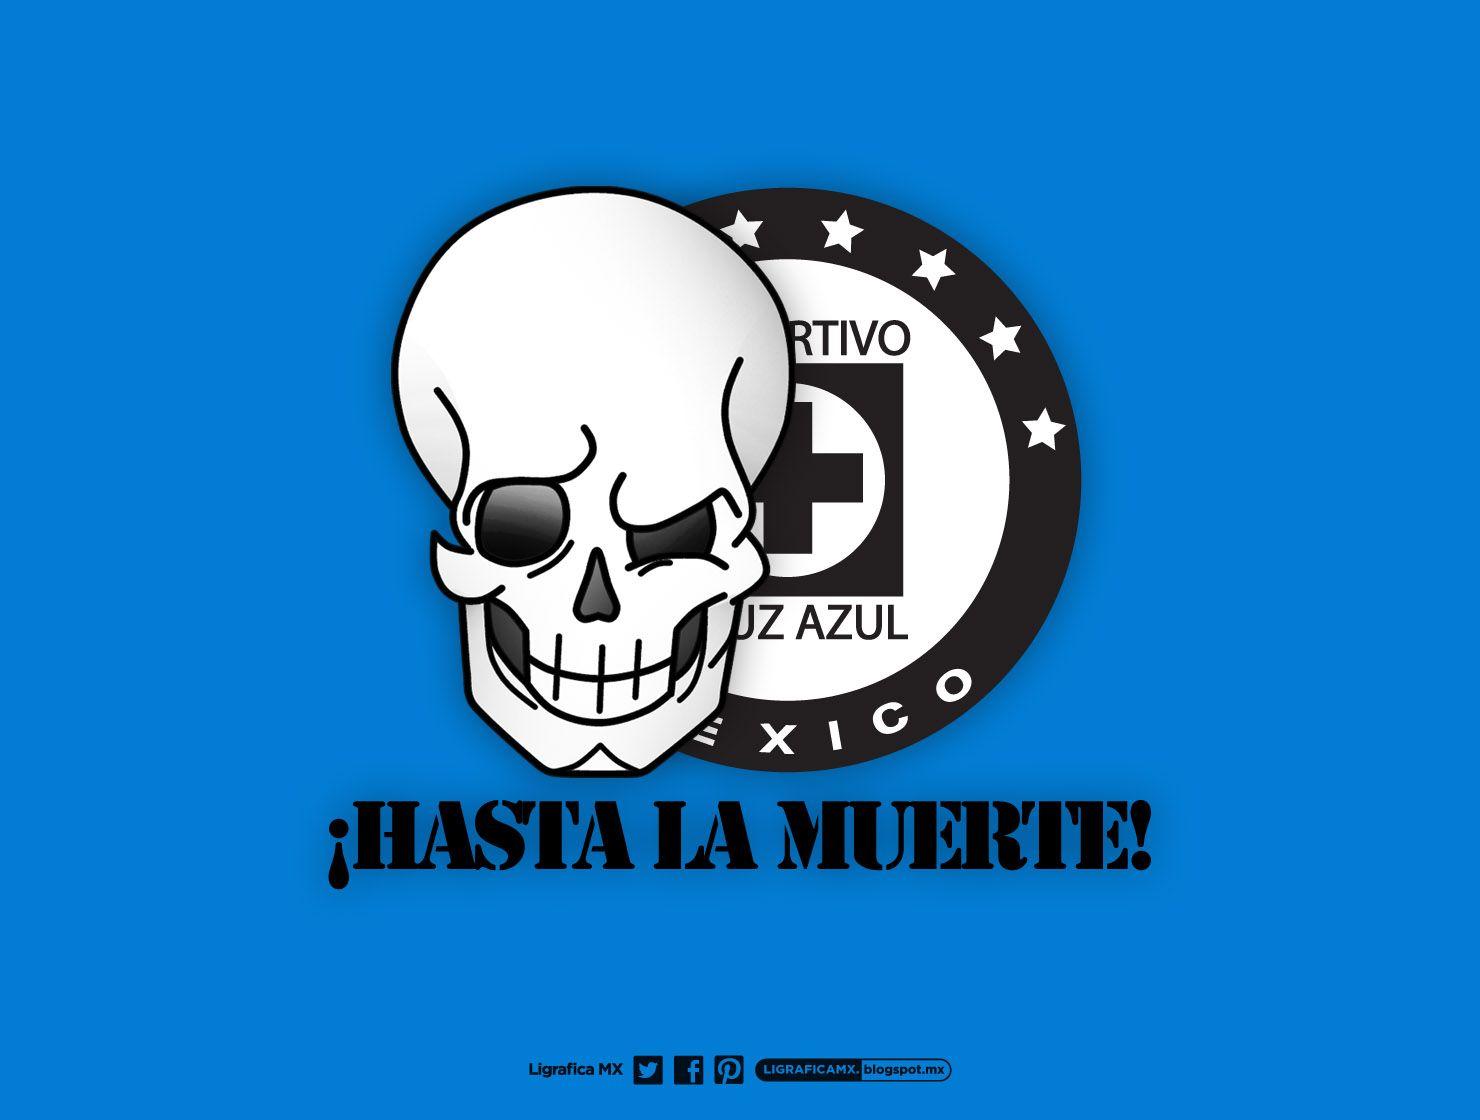 CruzAzul #HastaLaMuerte #LigraficaMX #Wallpaper. Cruz Azul